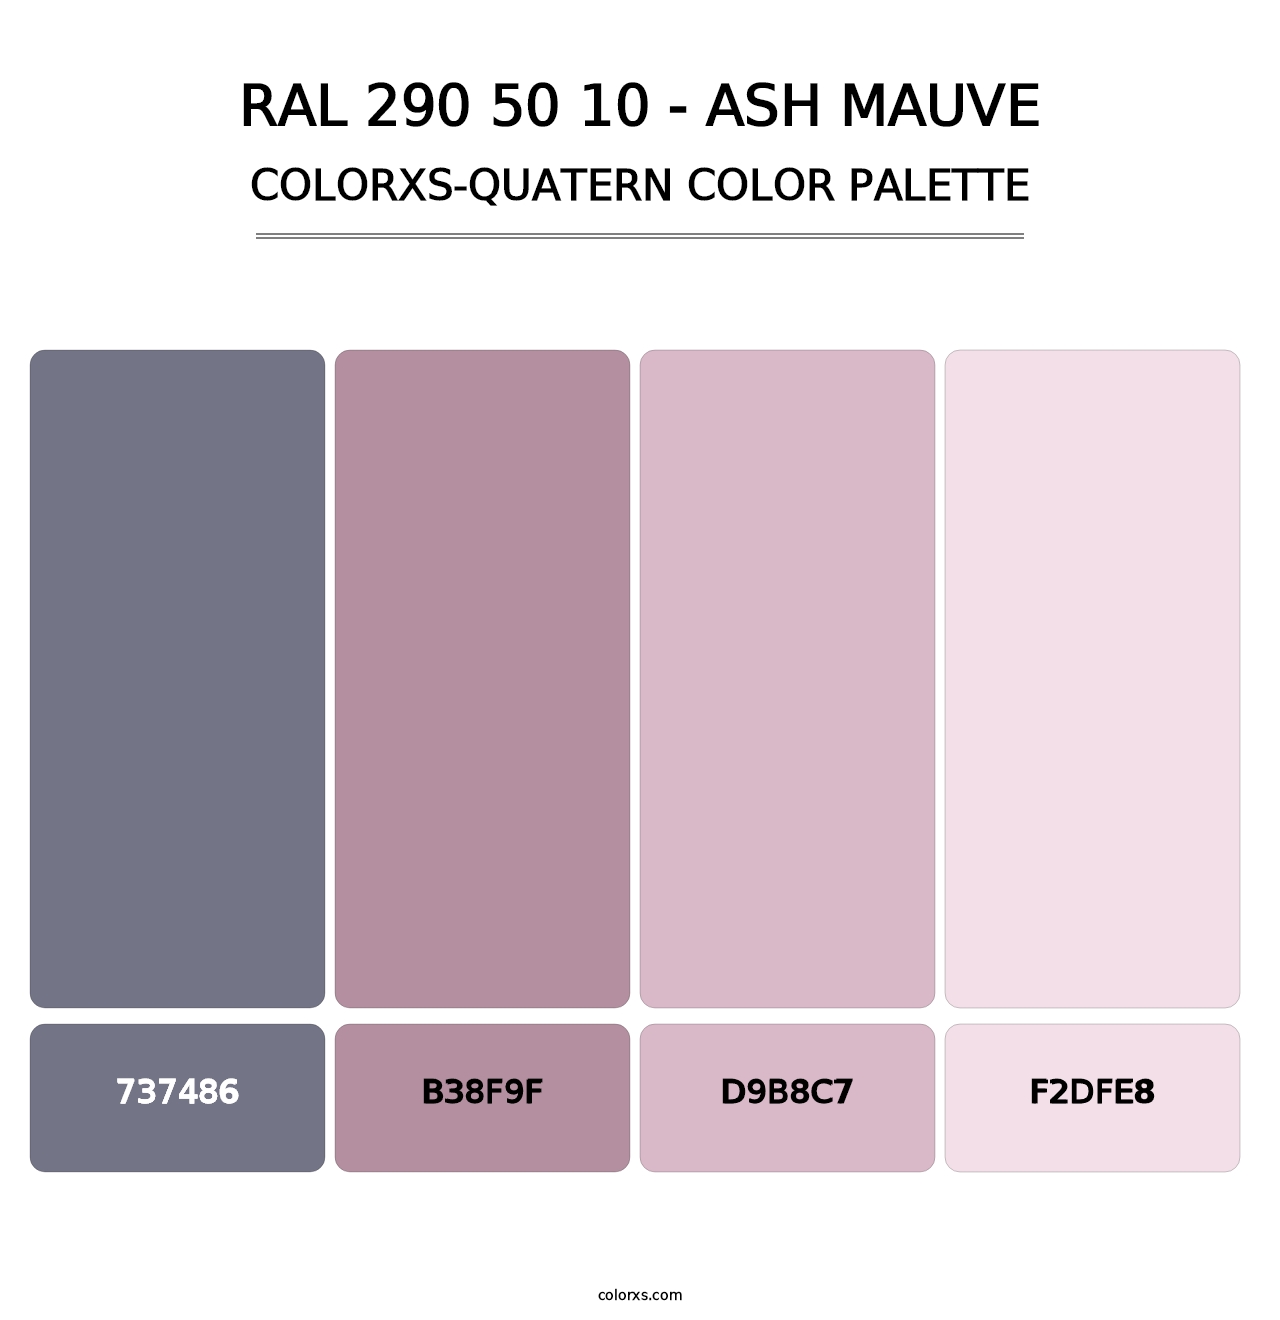 RAL 290 50 10 - Ash Mauve - Colorxs Quatern Palette